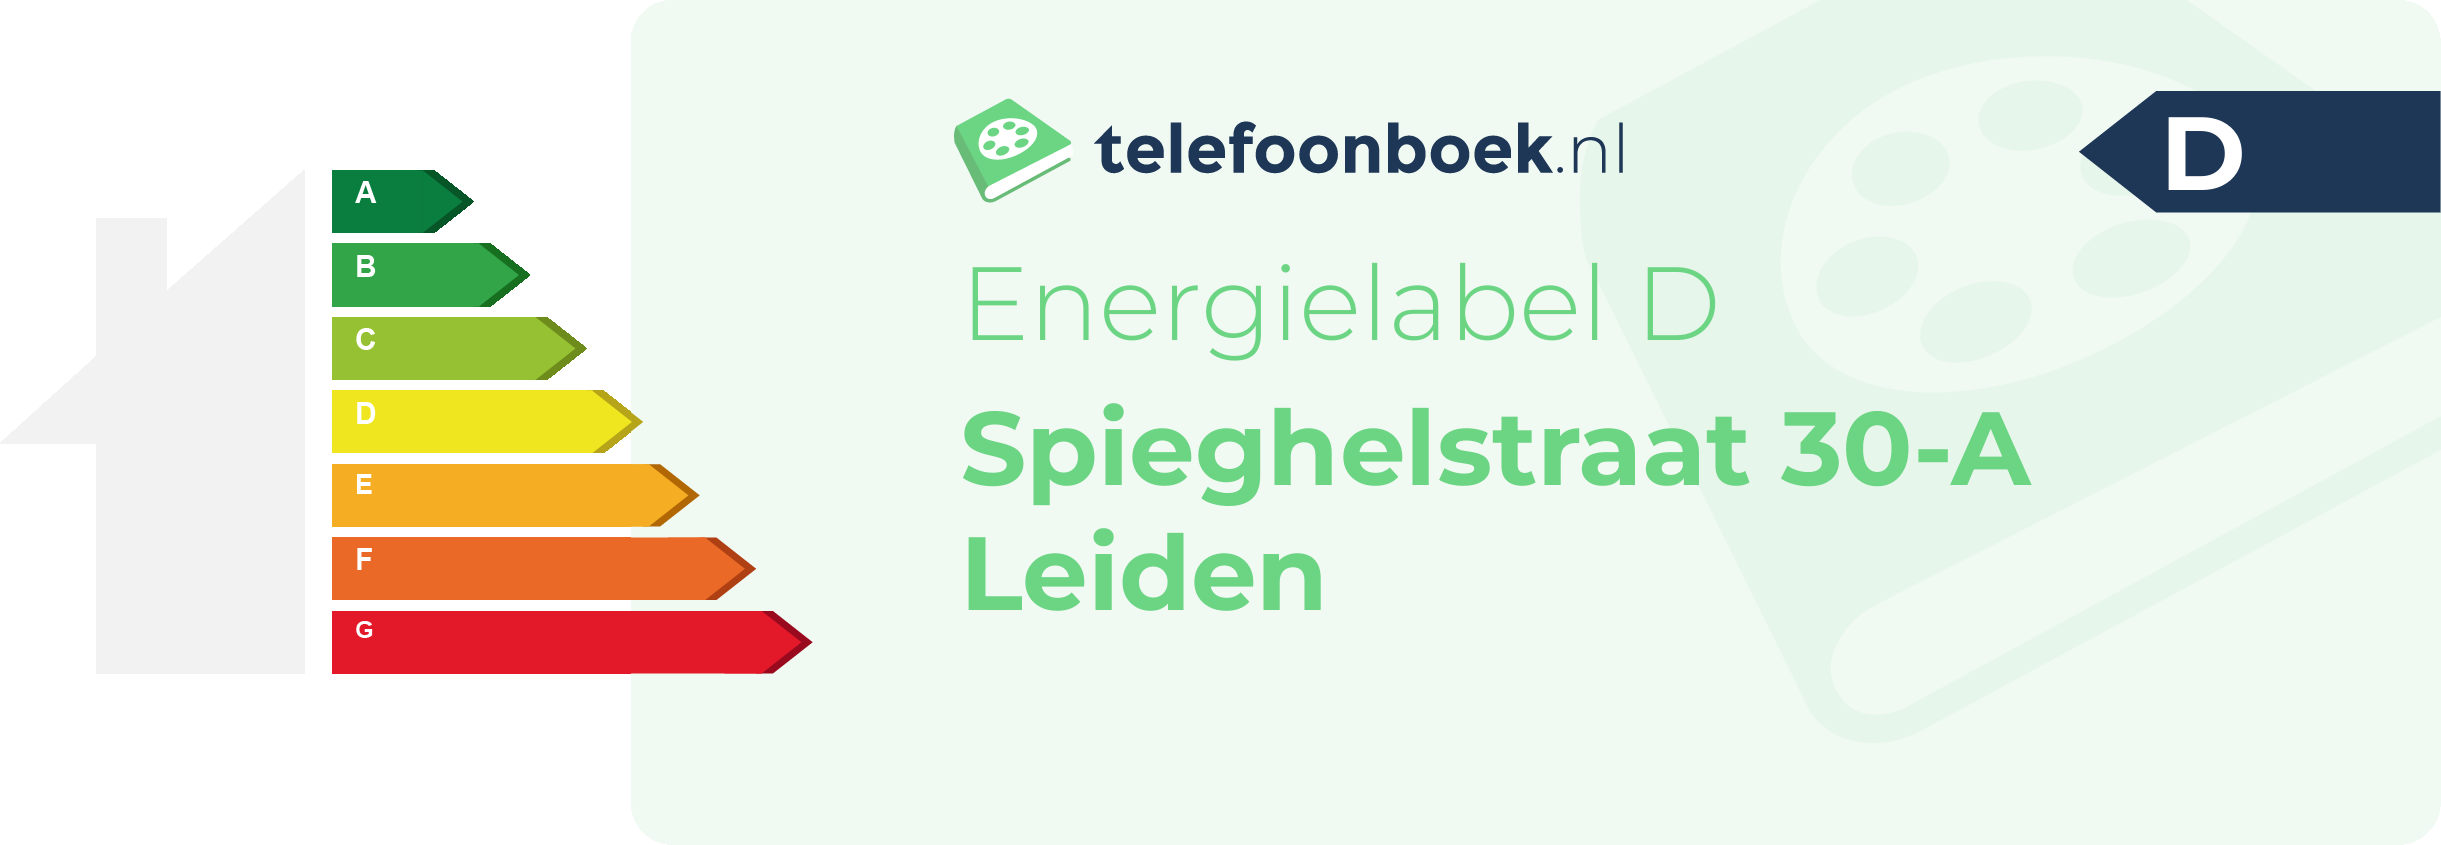 Energielabel Spieghelstraat 30-A Leiden